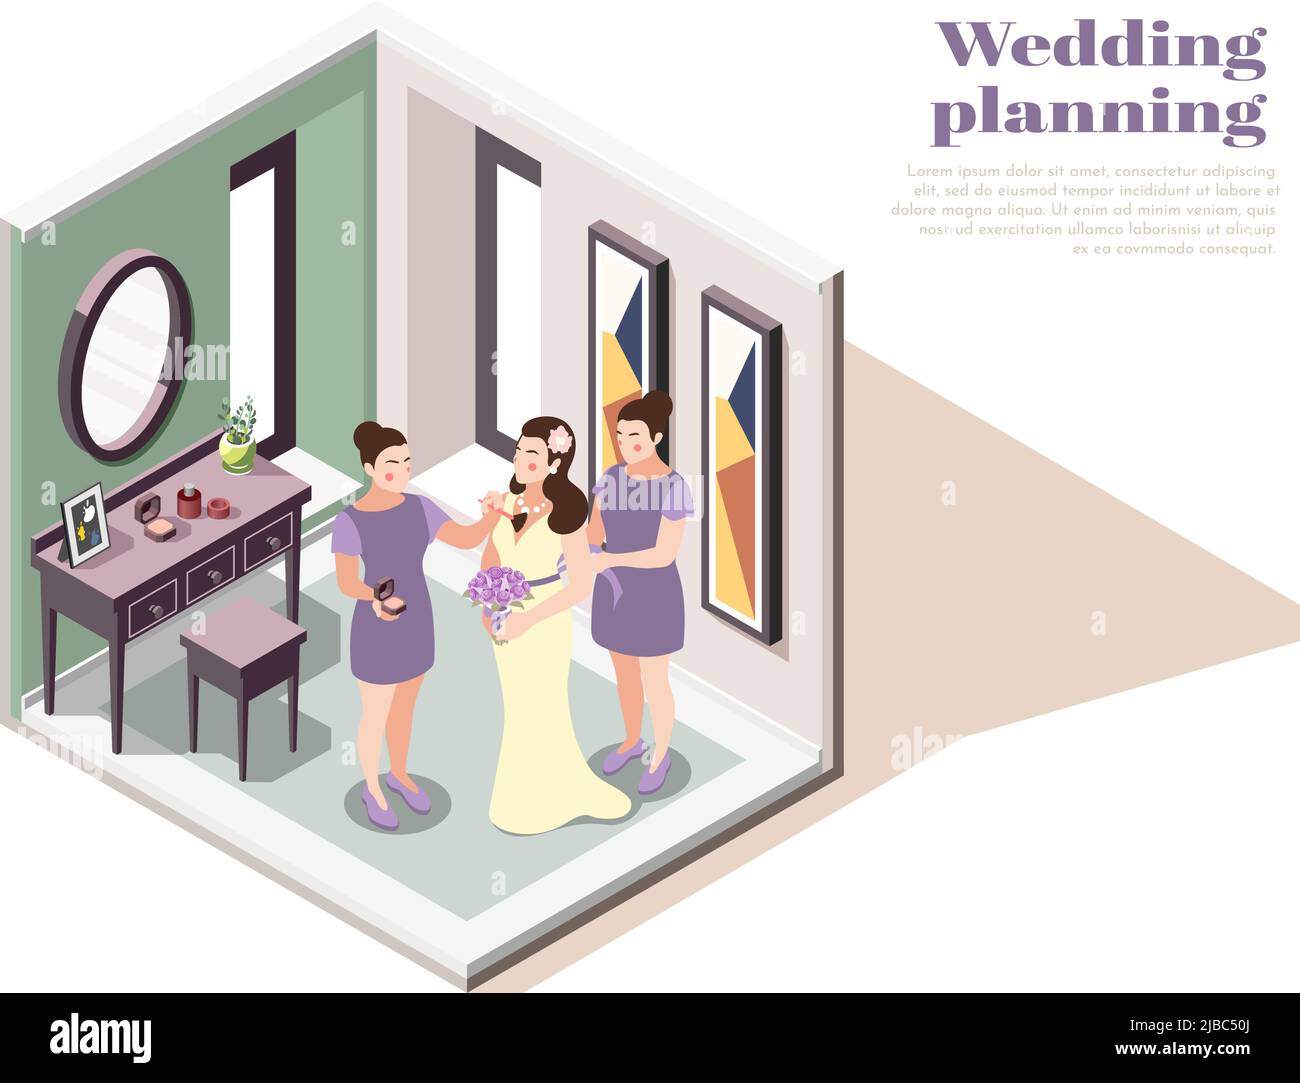 Hochzeit Planung isometrische Zusammensetzung mit weiblichen Charakteren Vorbereitung Braut für Hochzeitszeremonie Vektor-Illustration Stock Vektor